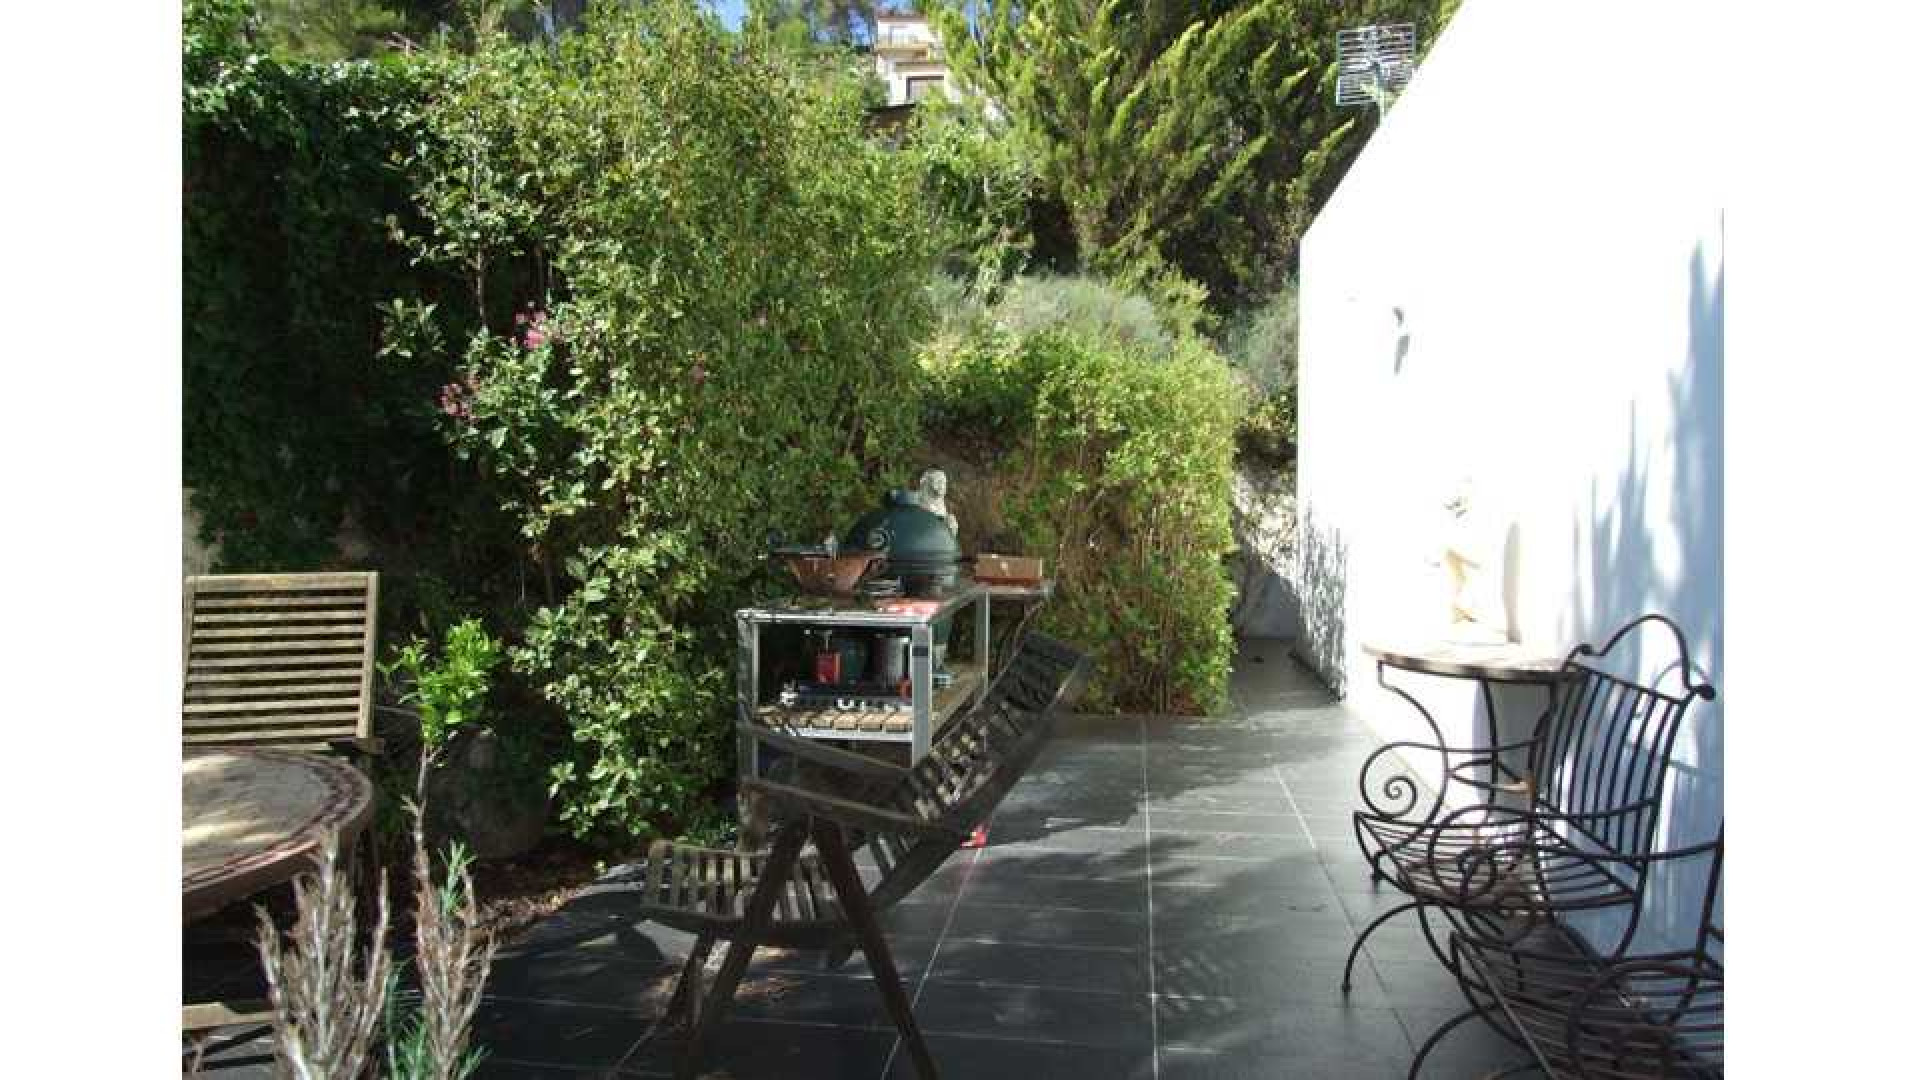 Tuinman Rob Verlinden doet zijn Spaanse villa voor spotprijs weg. Zie foto's